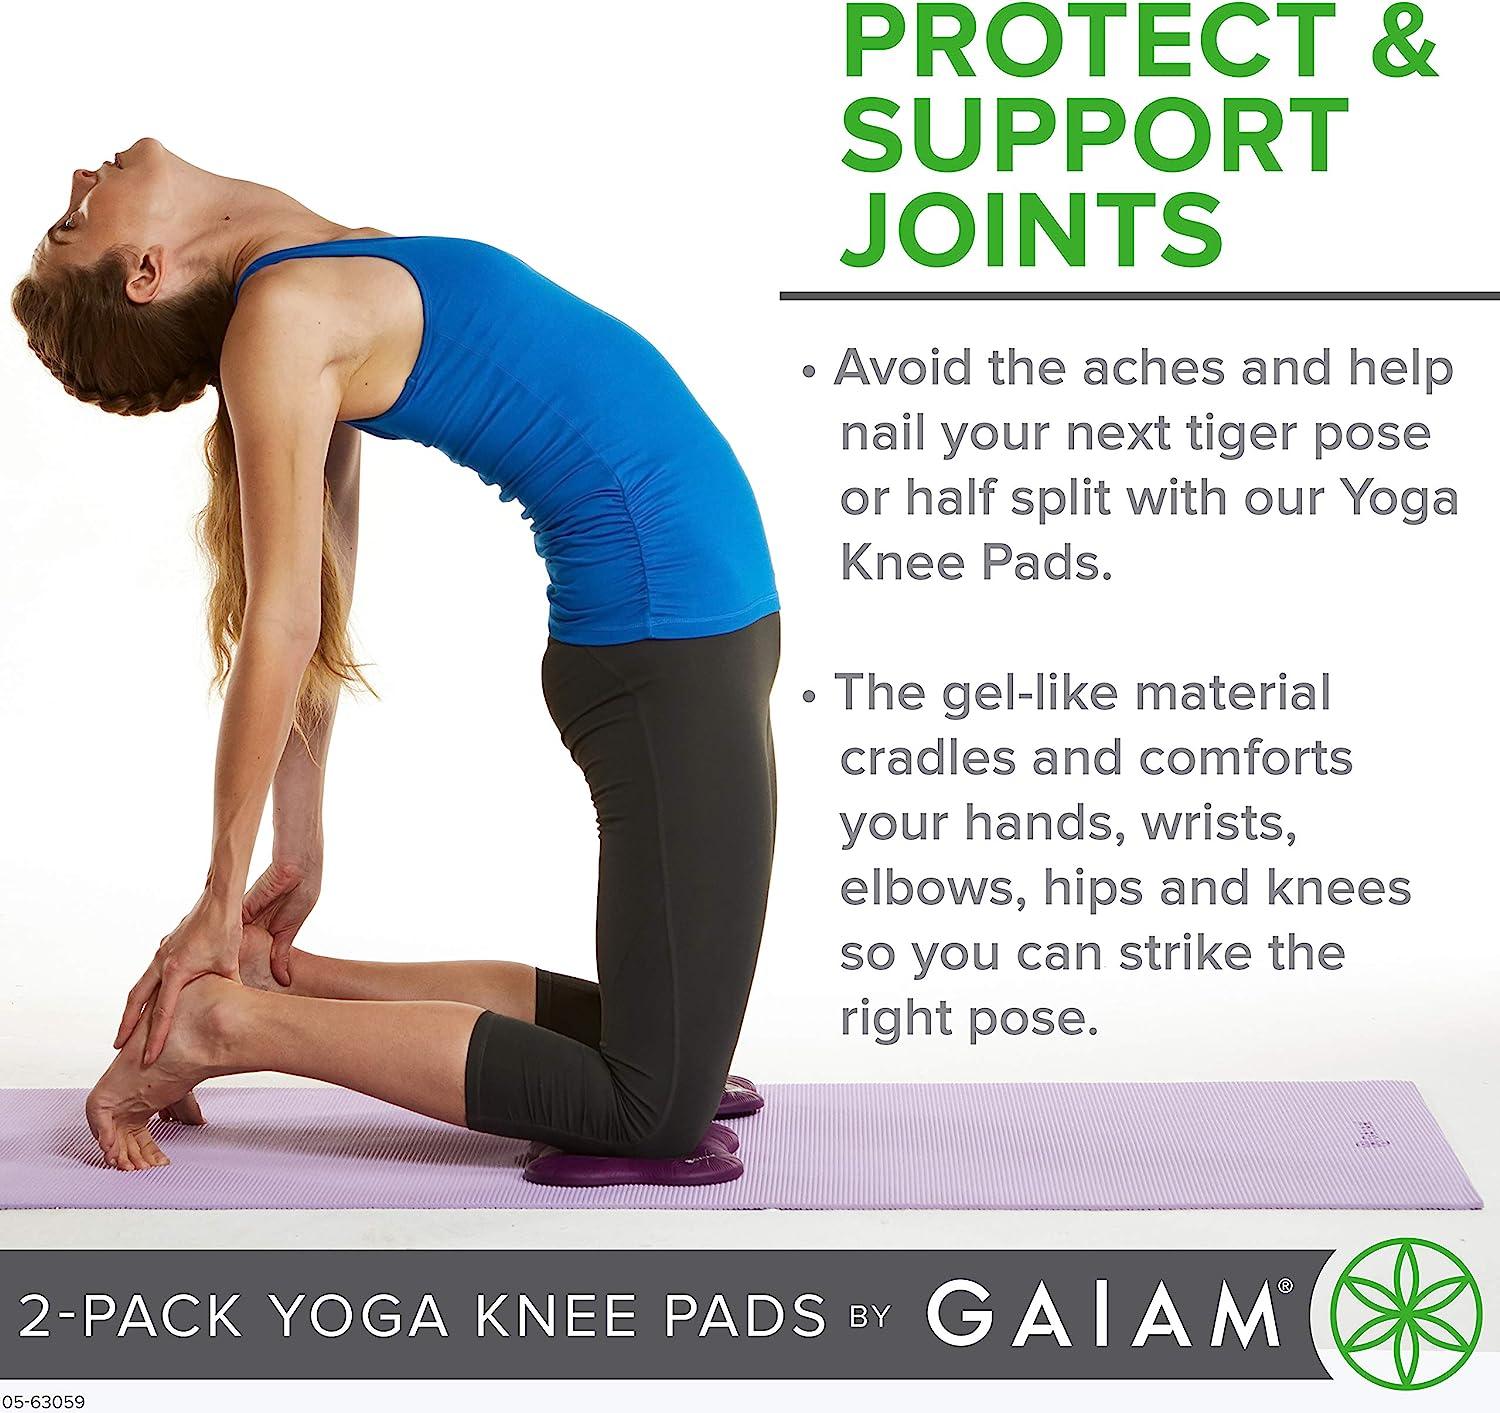 Gaiam Yoga Knee Pads 